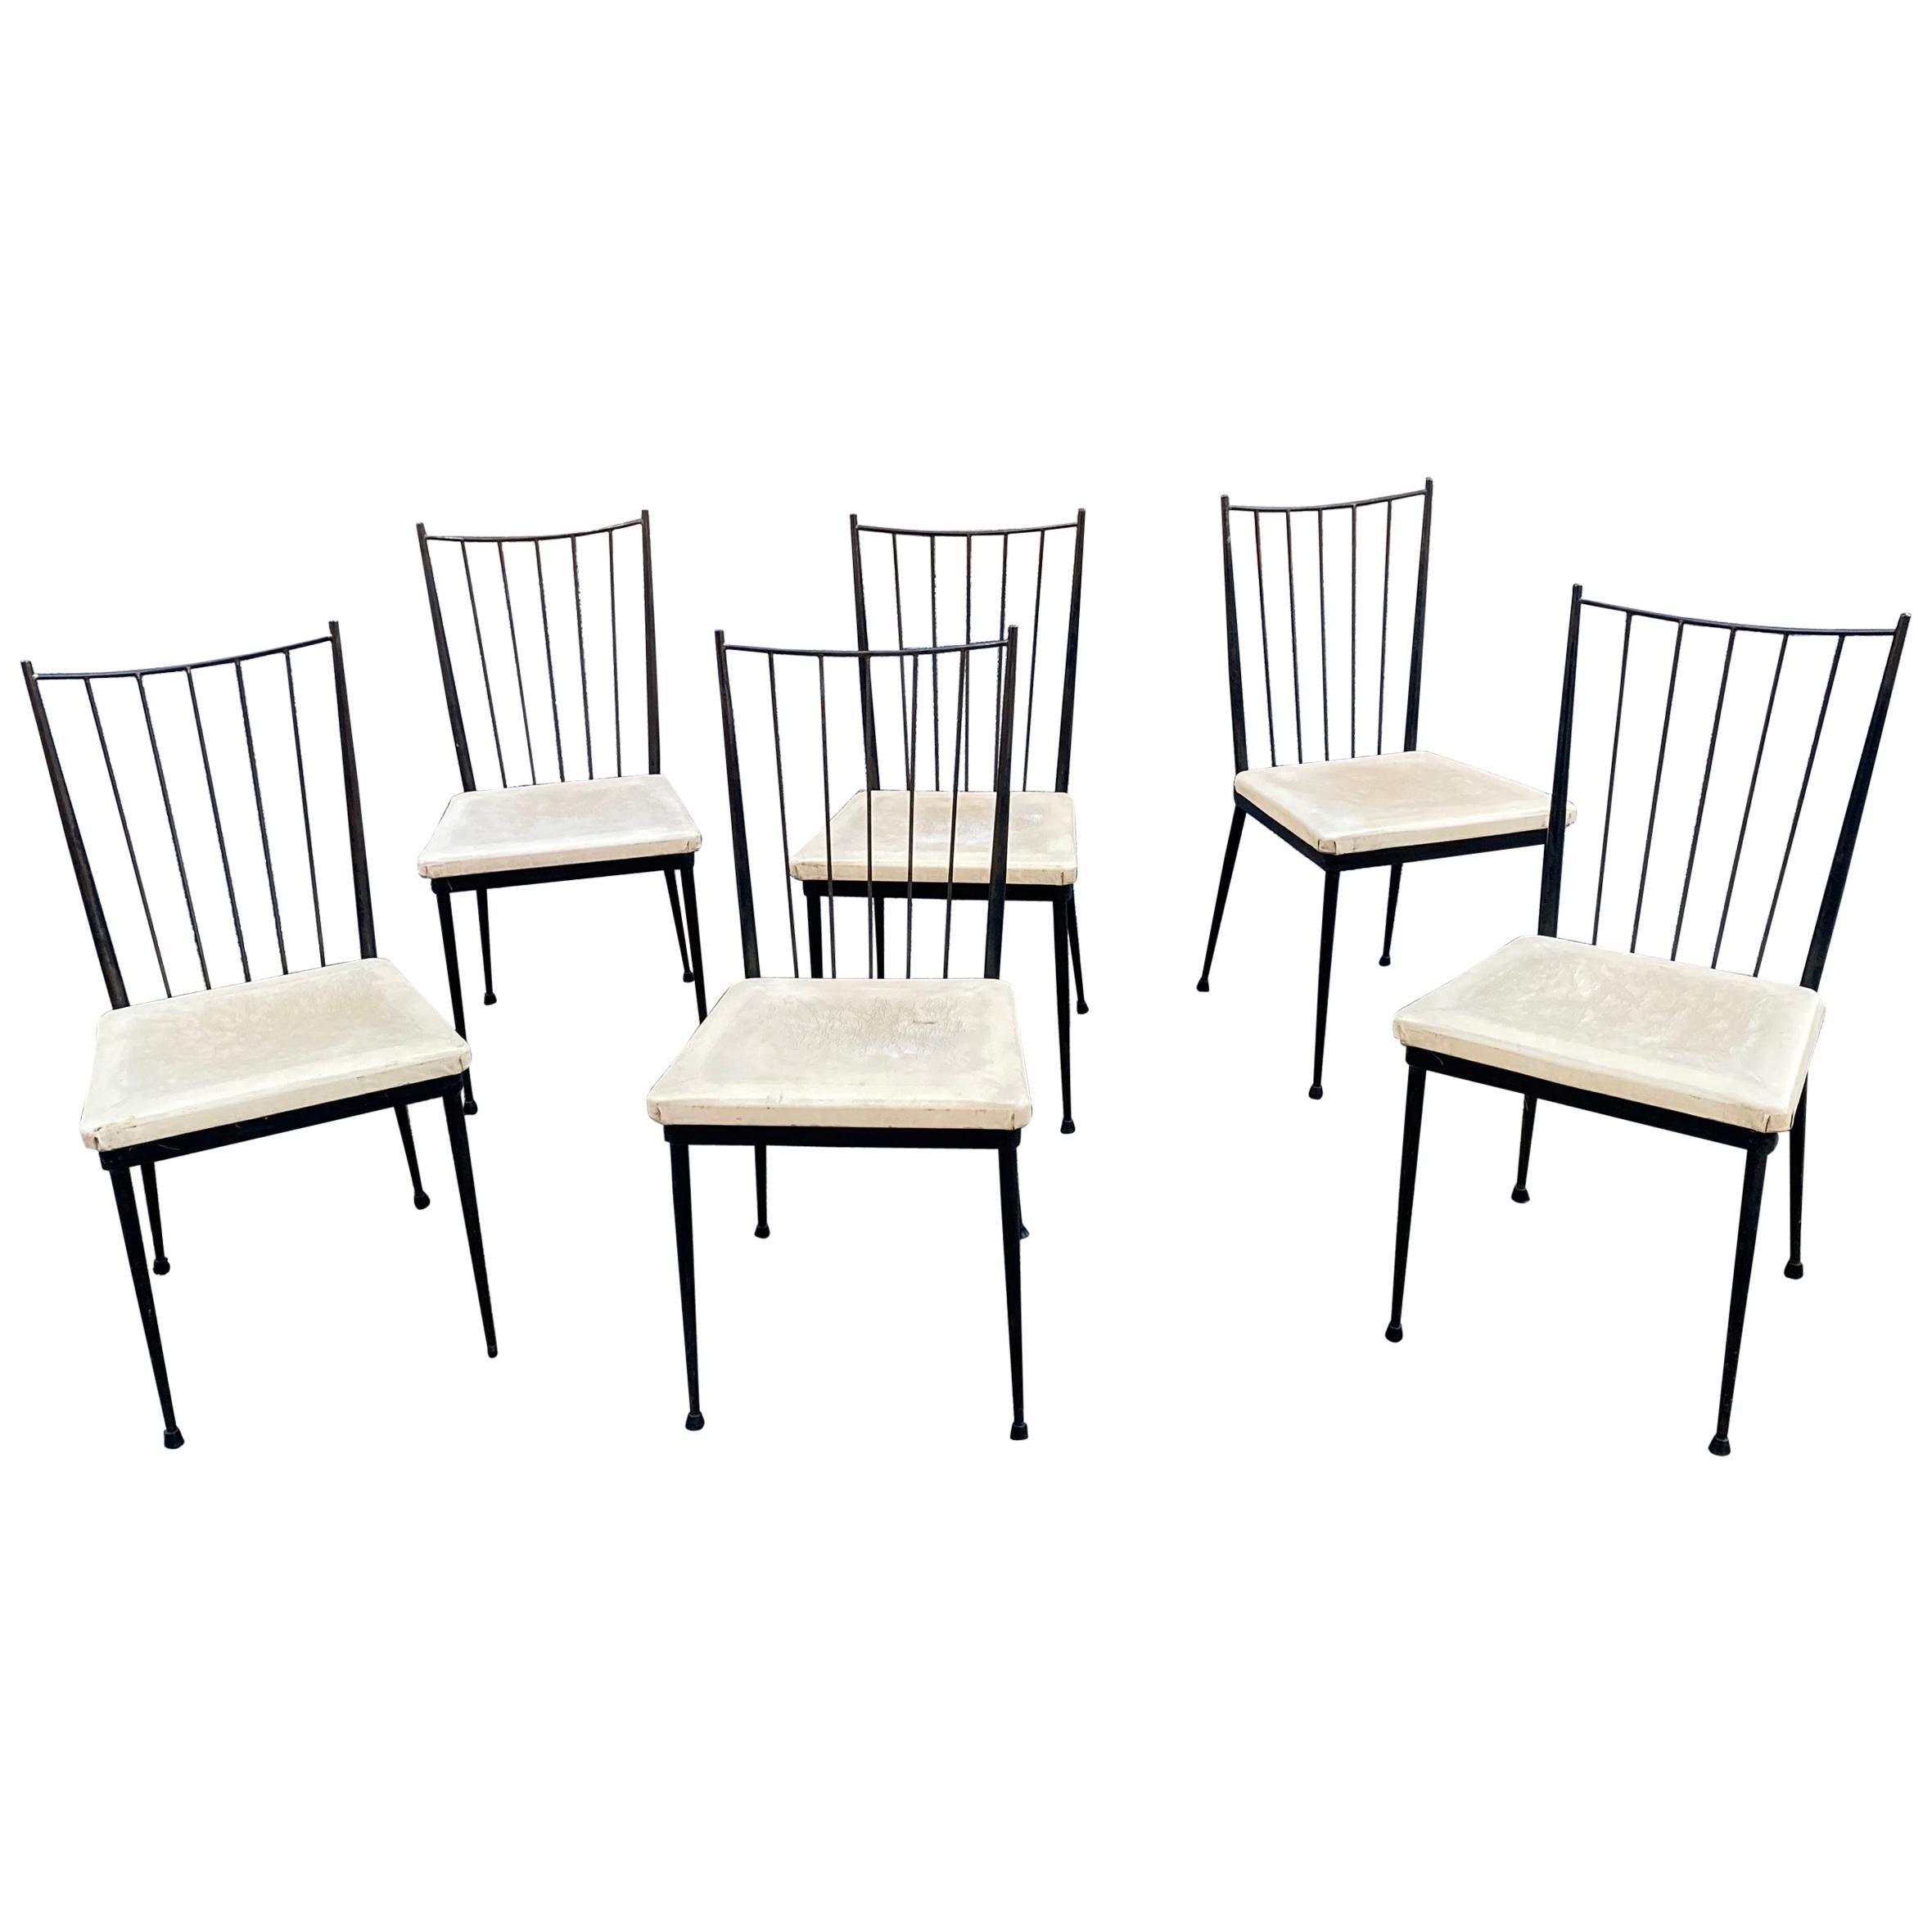 6 Stühle aus lackiertem Metall, französisches Rekonstruktion um 1950/1960